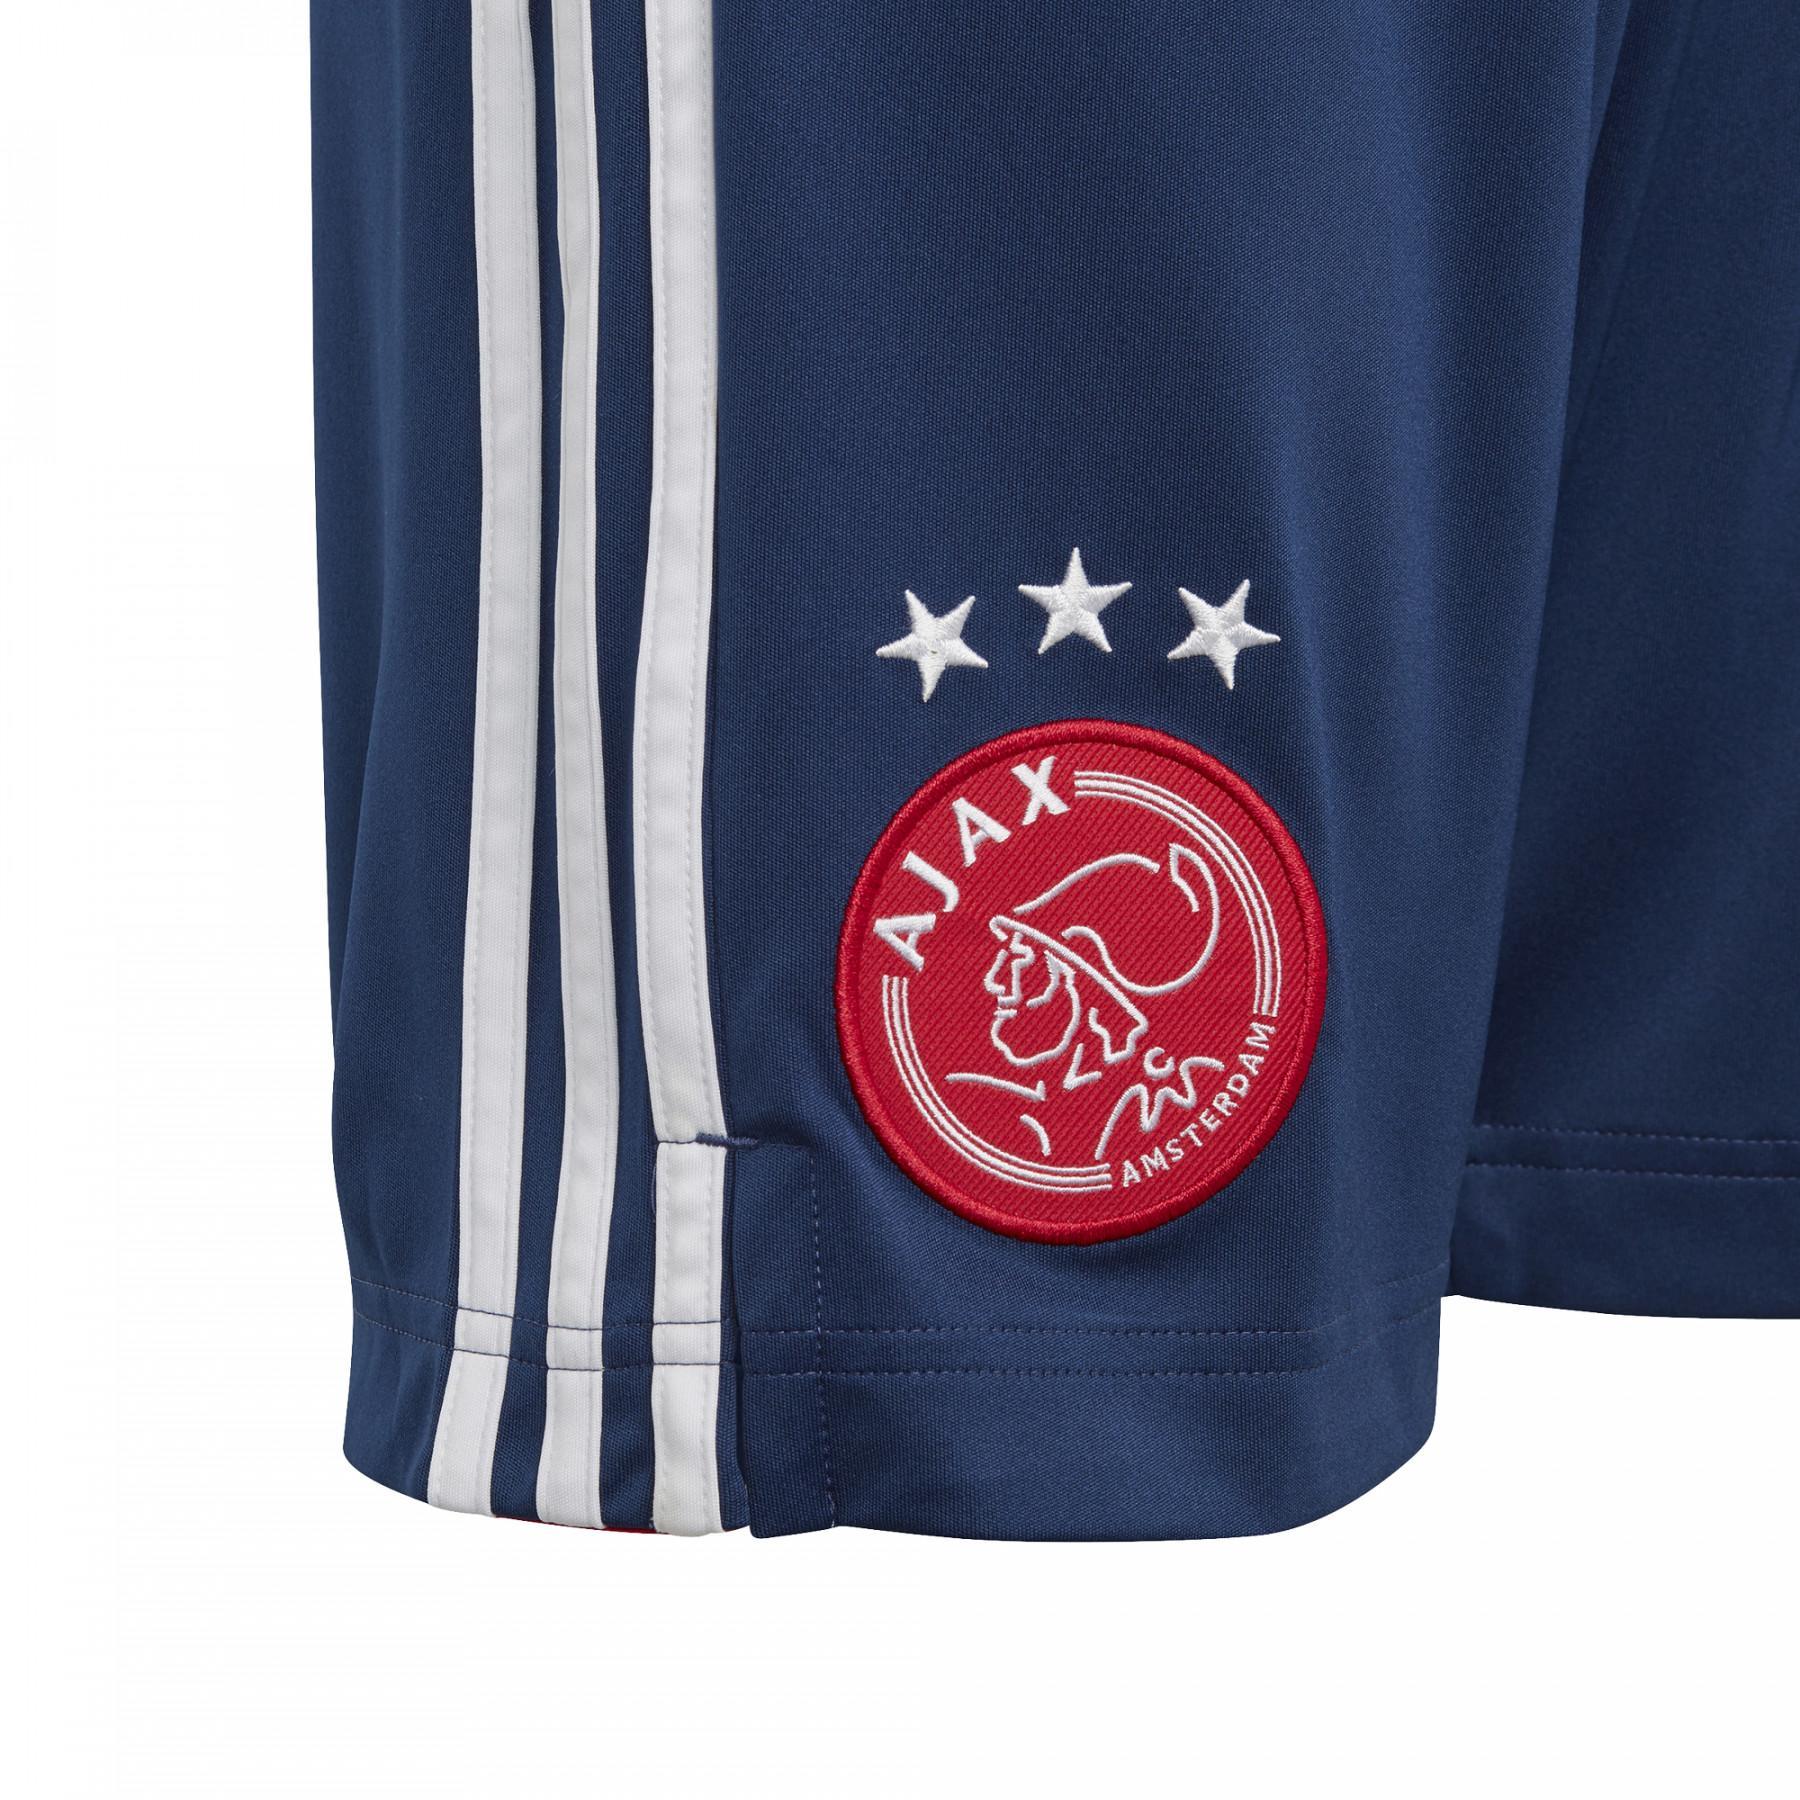 Children's outdoor shorts Ajax Amsterdam 2020/21